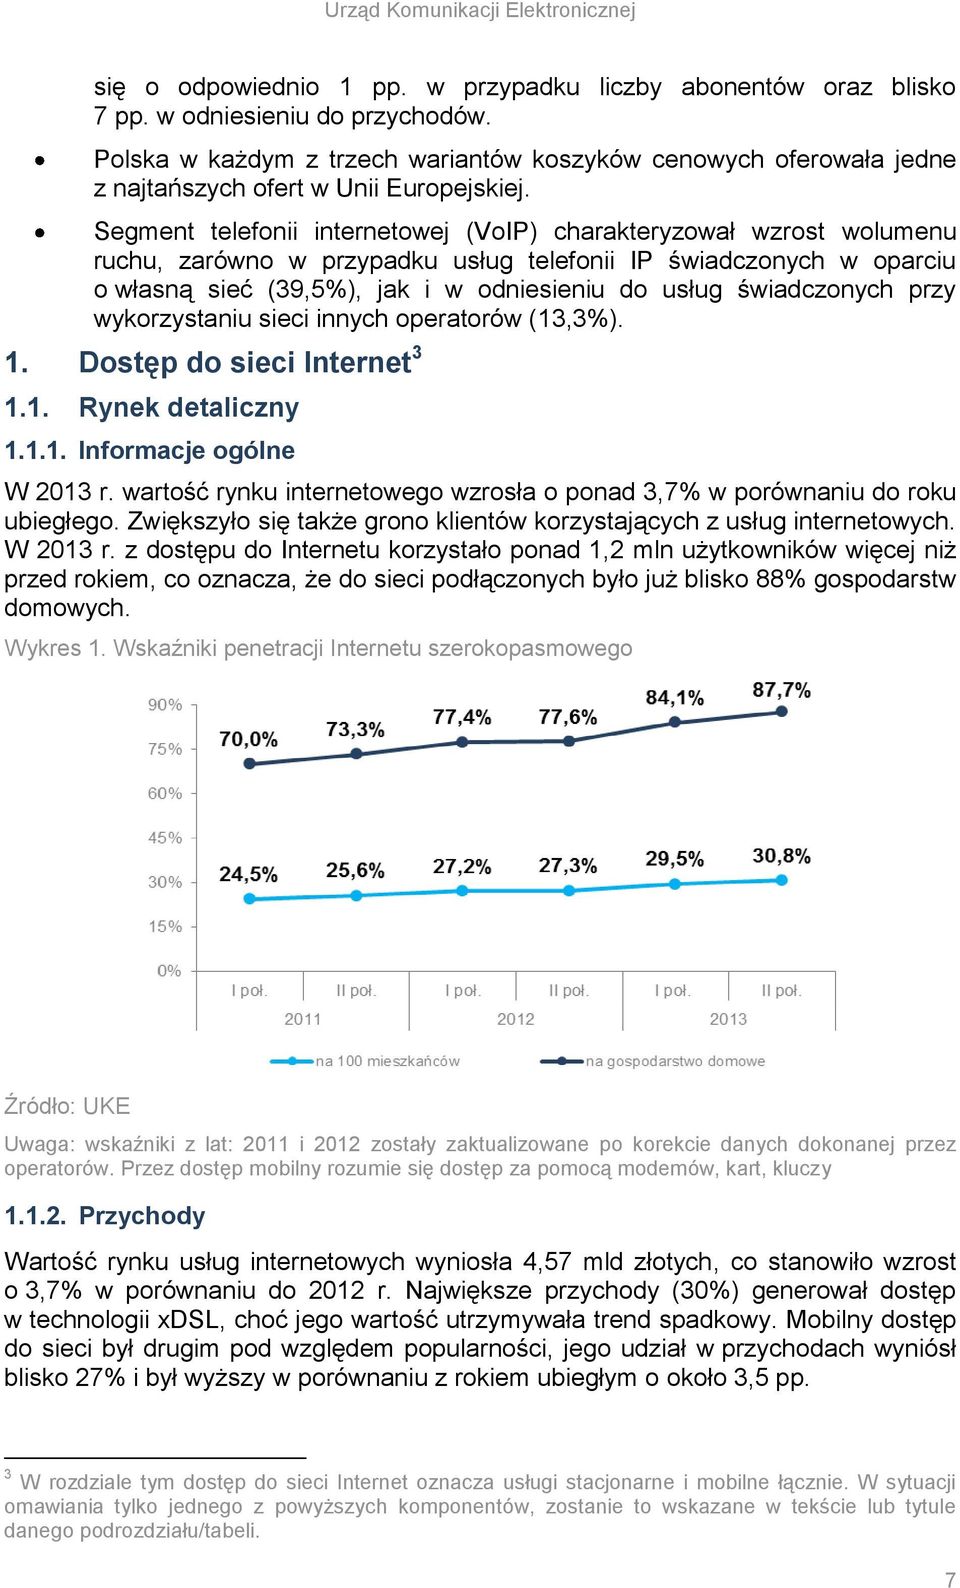 Segment telefonii internetowej (VoIP) charakteryzował wzrost wolumenu ruchu, zarówno w przypadku usług telefonii IP świadczonych w oparciu o własną sieć (39,5%), jak i w odniesieniu do usług